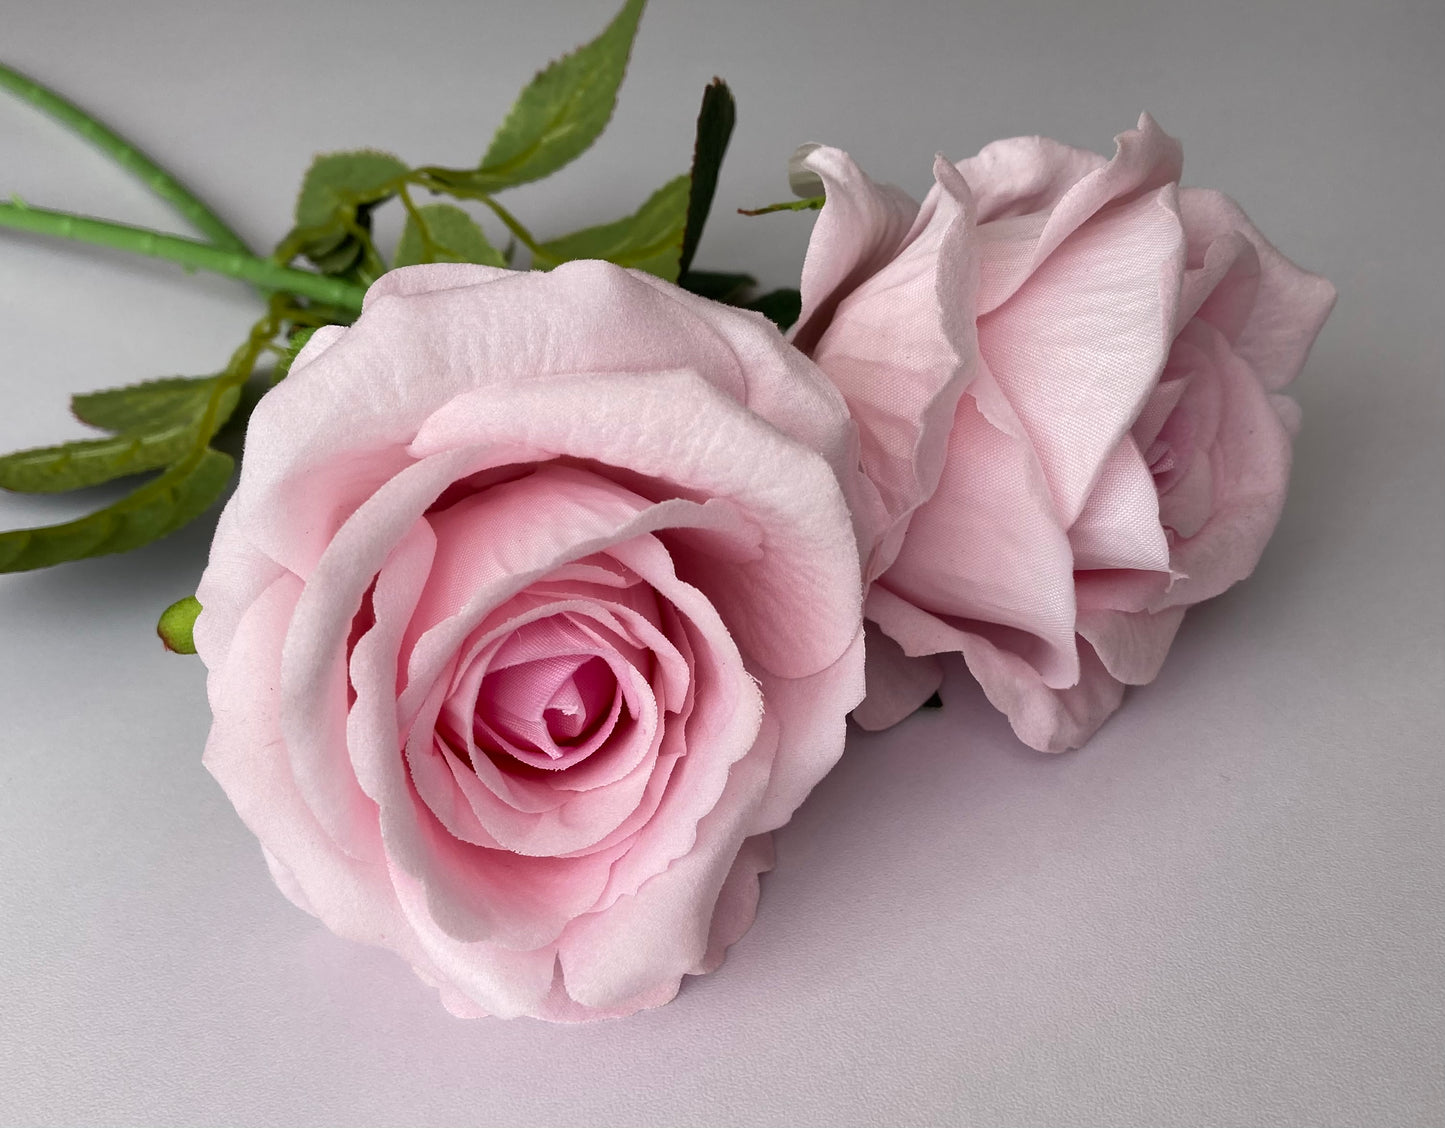 Soft Pink Velvet Touch Rose